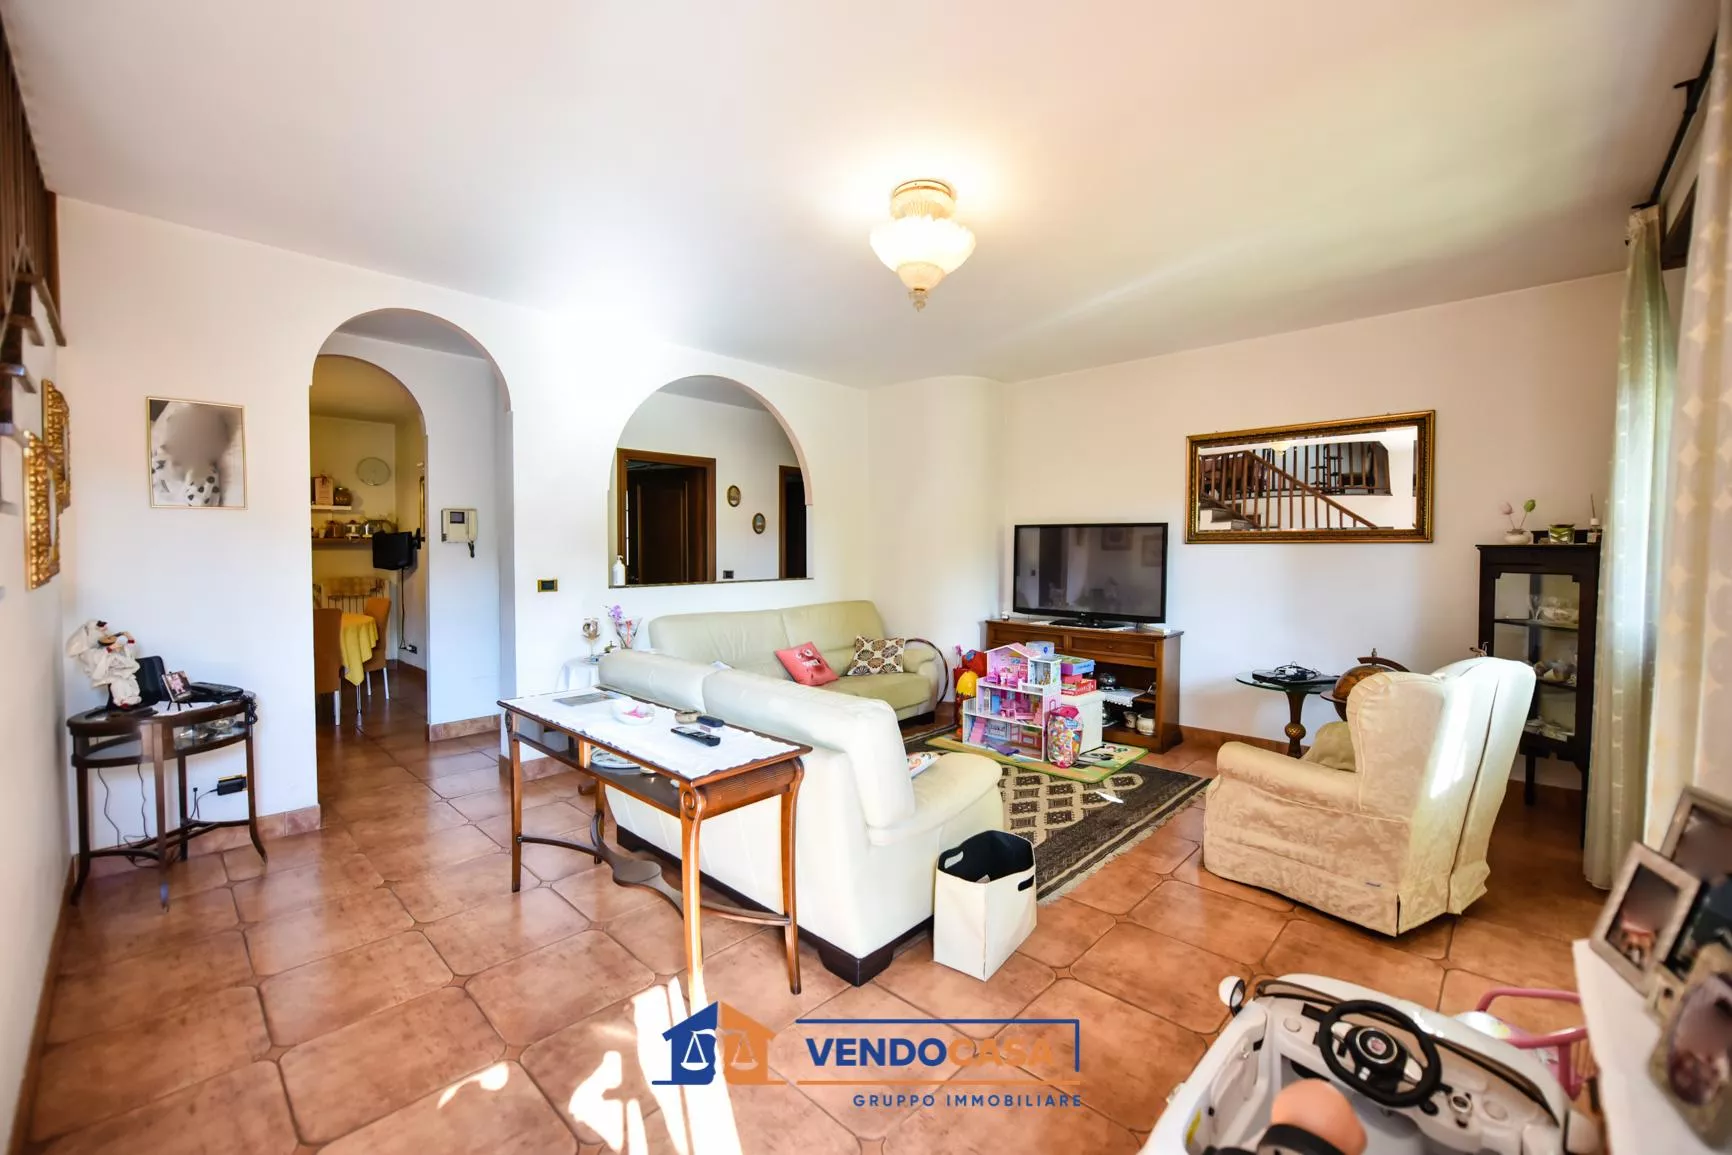 Immagine per Casa Indipendente in vendita a Vinovo via Padre Aliberti 55